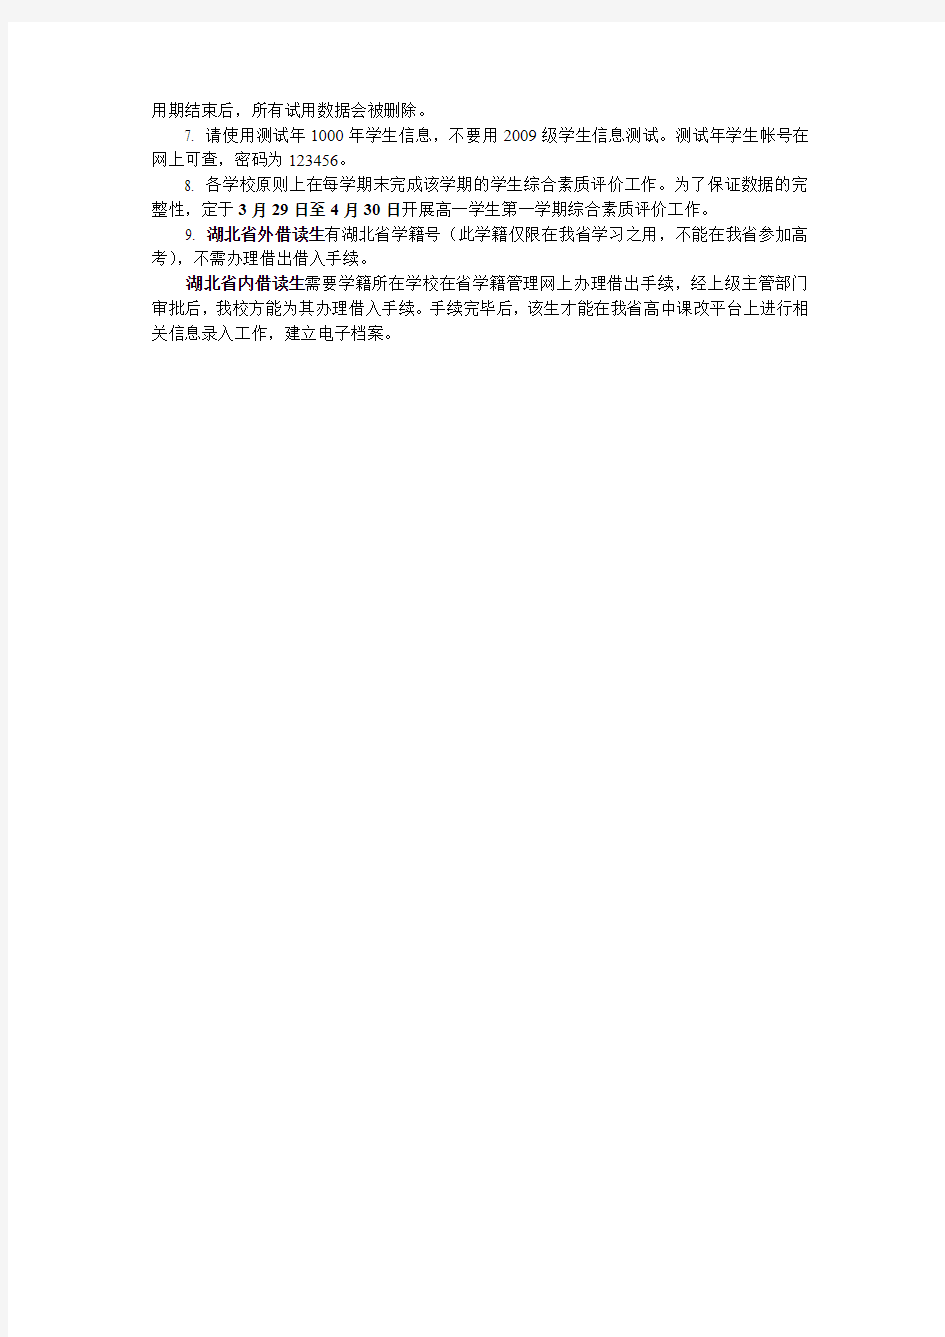 湖北省普通高中学生综合素质评价管理平台